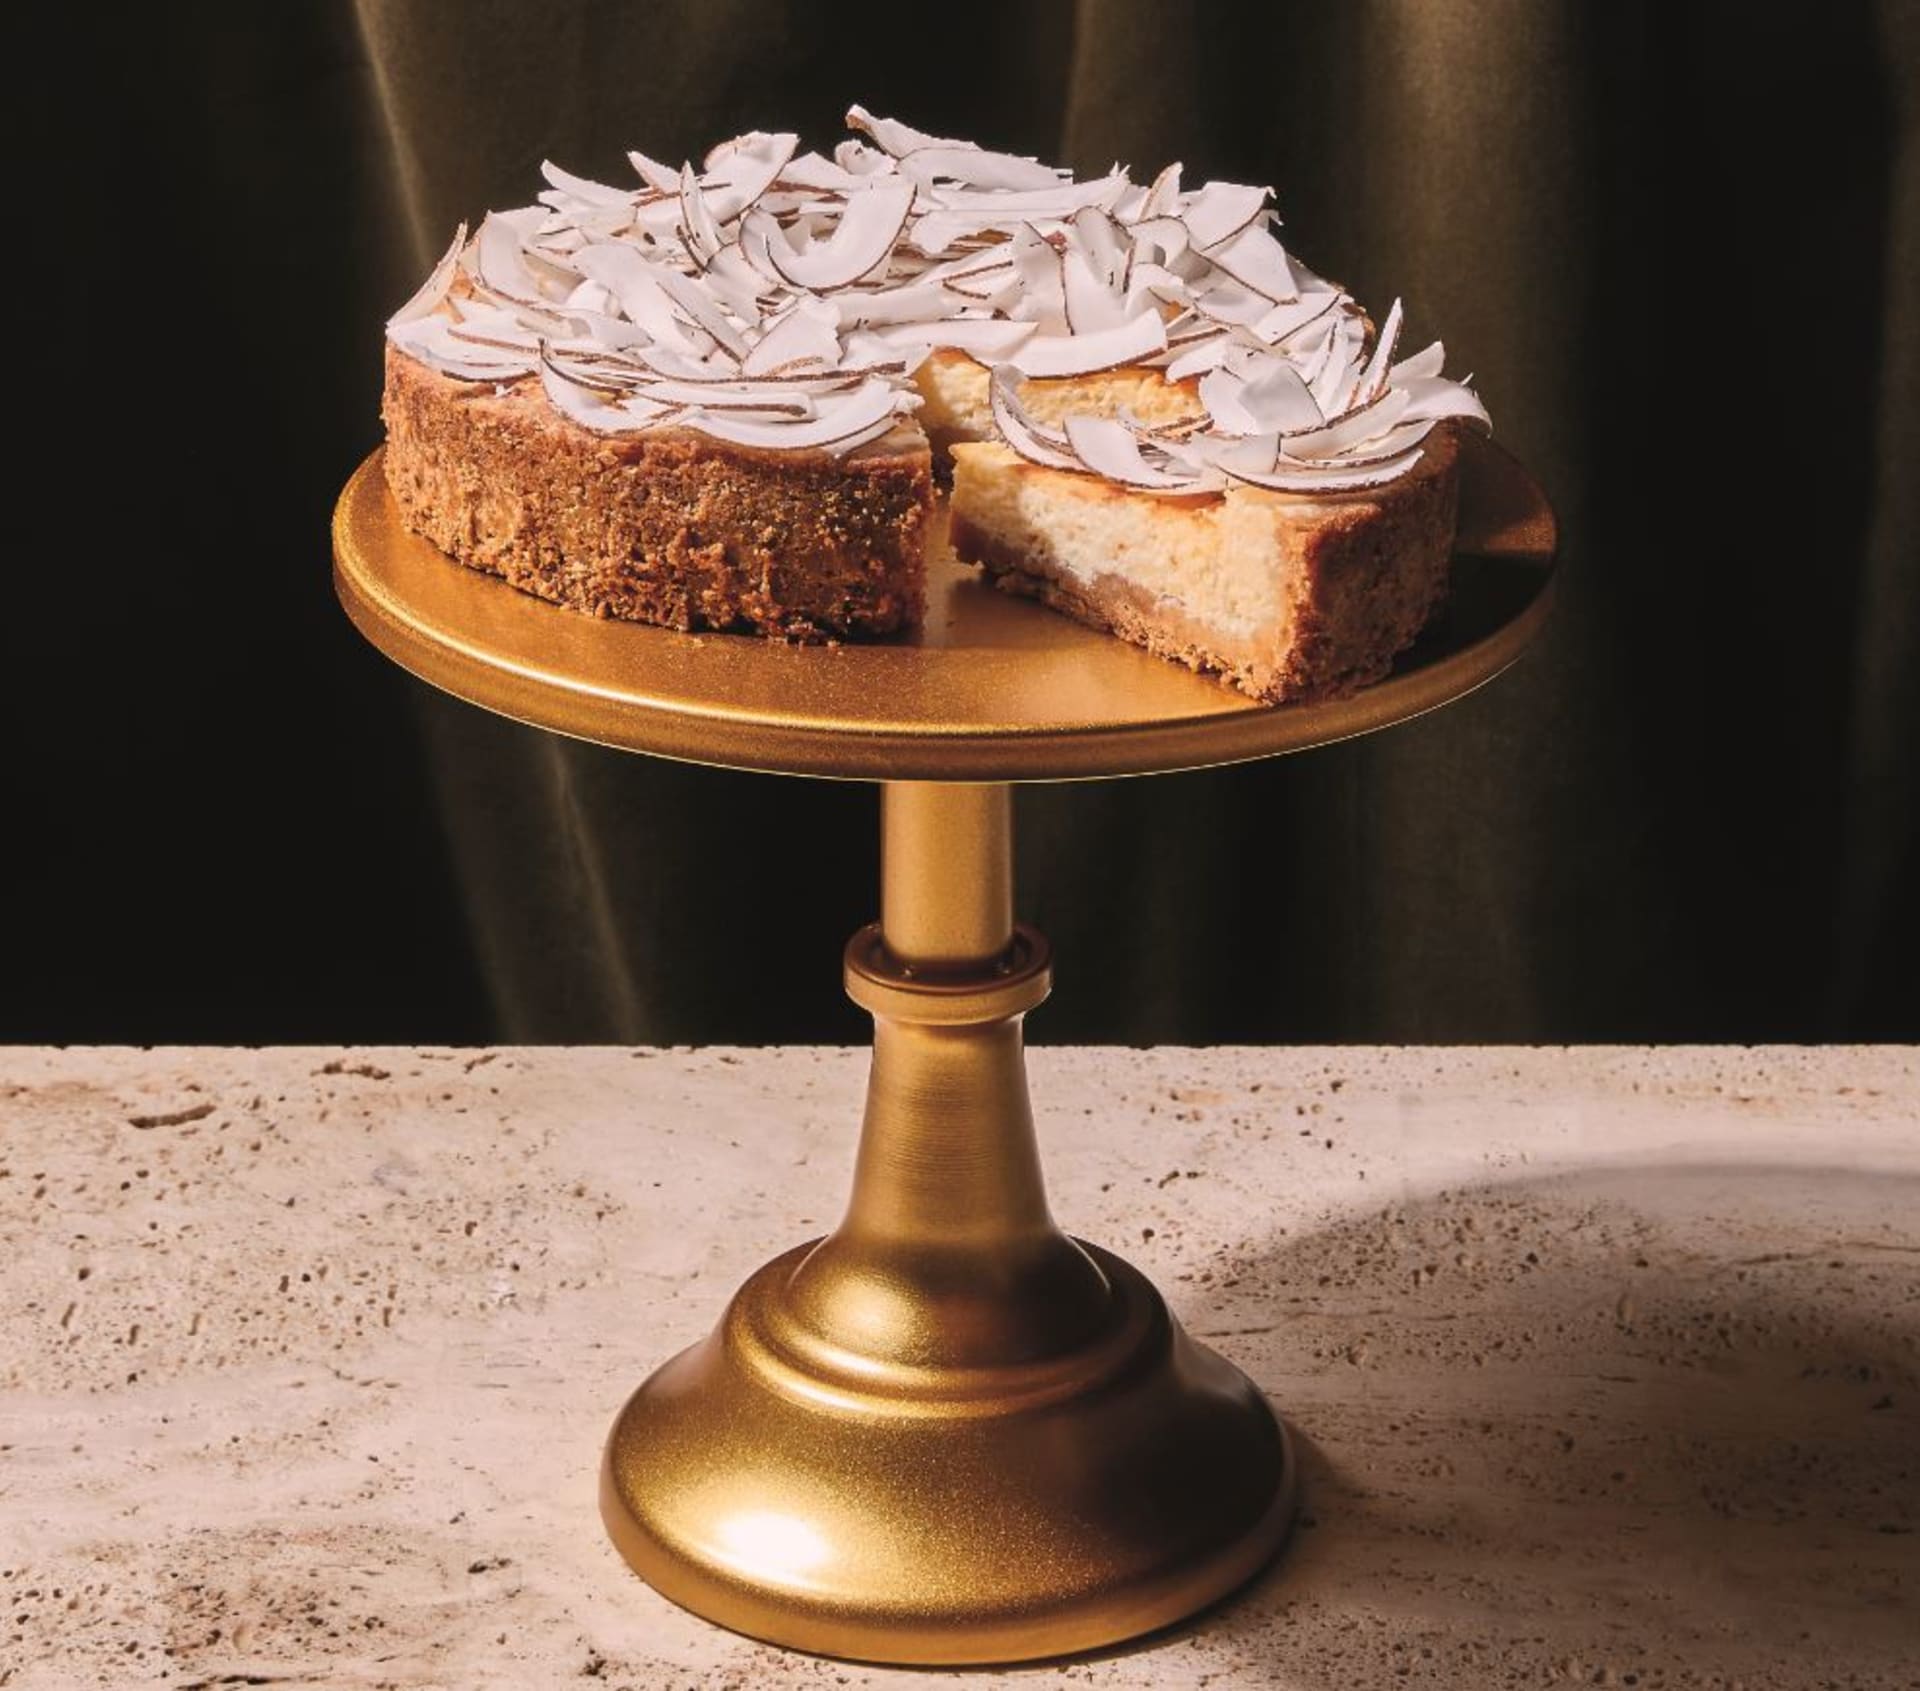 Andělský tvarohový cheesecake s kokosem podle Besky